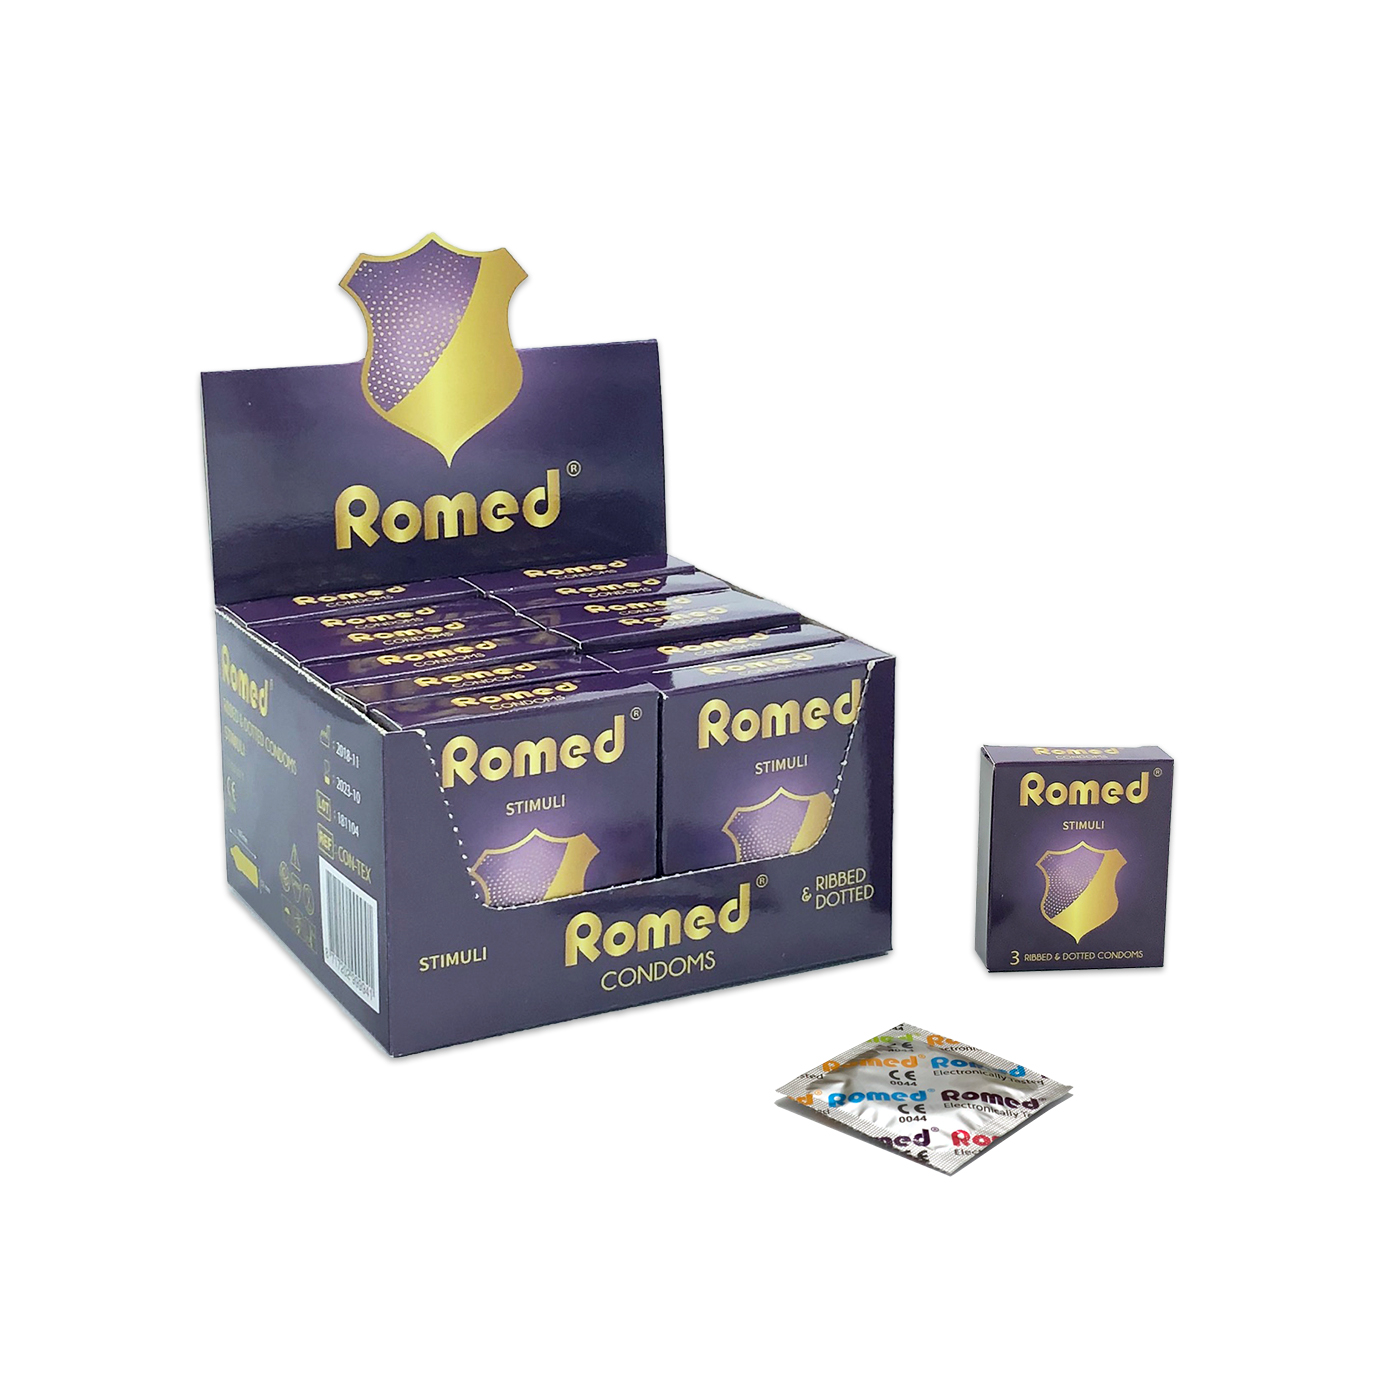 CON-TEX Romed condooms geribbeld, verpakt per 3 stuks in een envelopje, in cellofaan, 48 envelopjes van 3 stuks = 144 stuks in binnendoosje (= 1 gros), 30 x 144 stuks = 4.320 stuks in een karton.